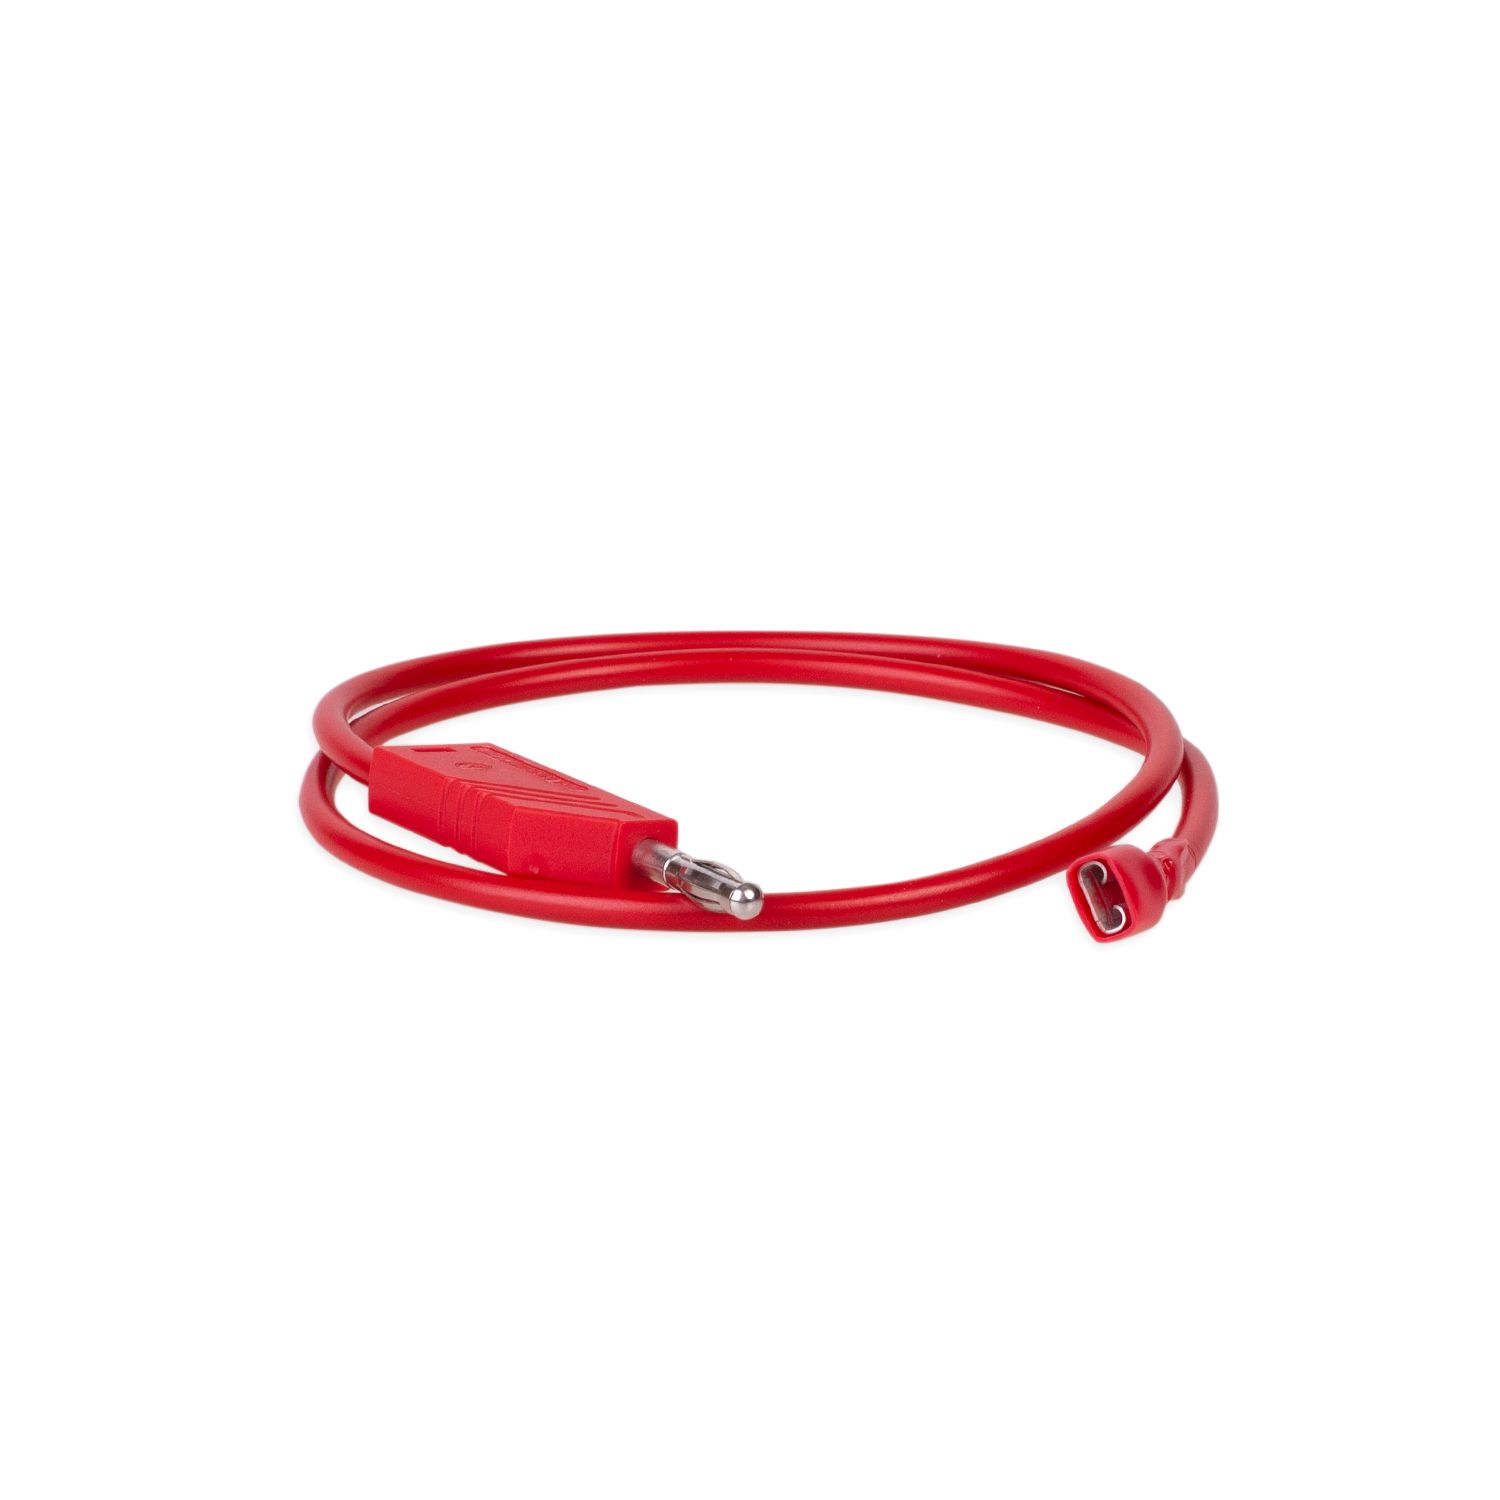 Kabel rot für RMgo!/ RM01